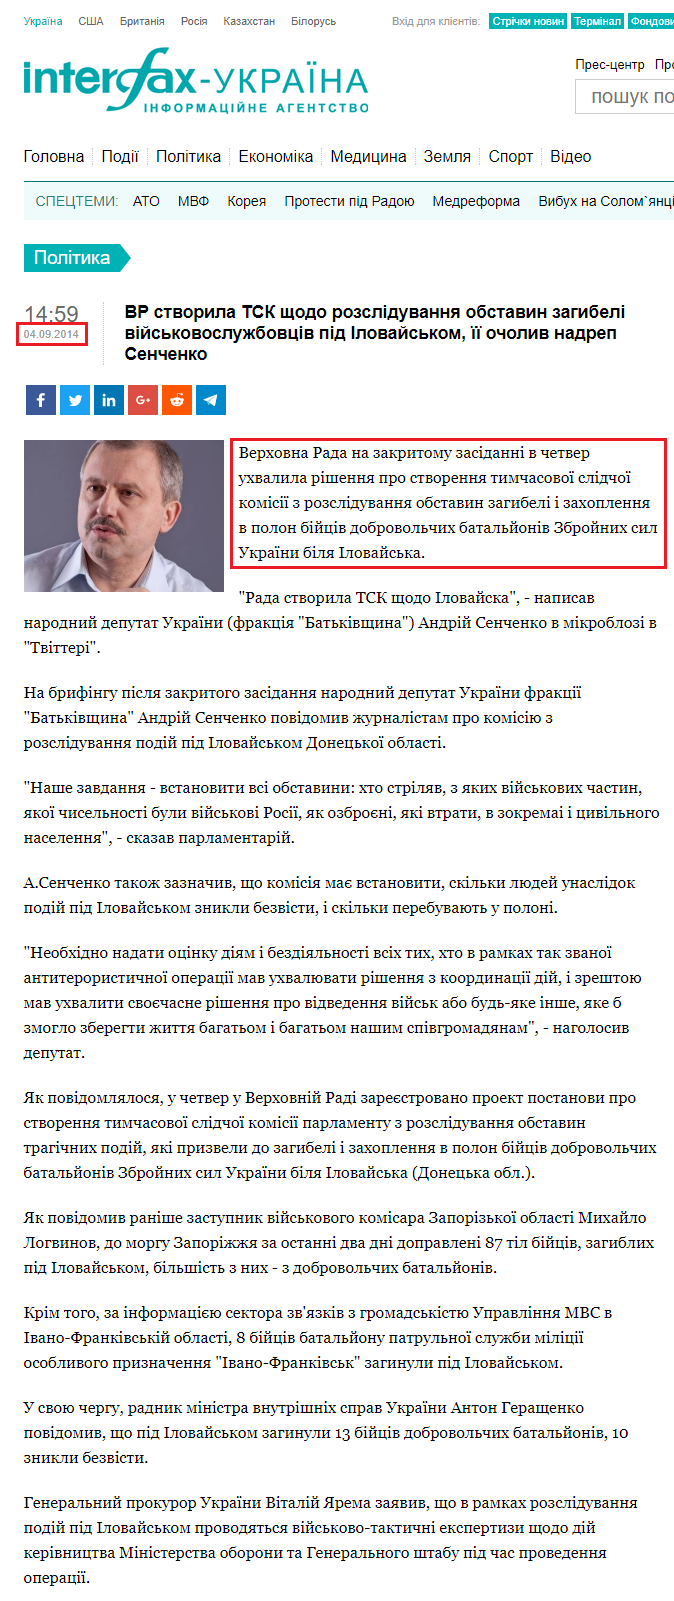 http://ua.interfax.com.ua/news/political/221811.html